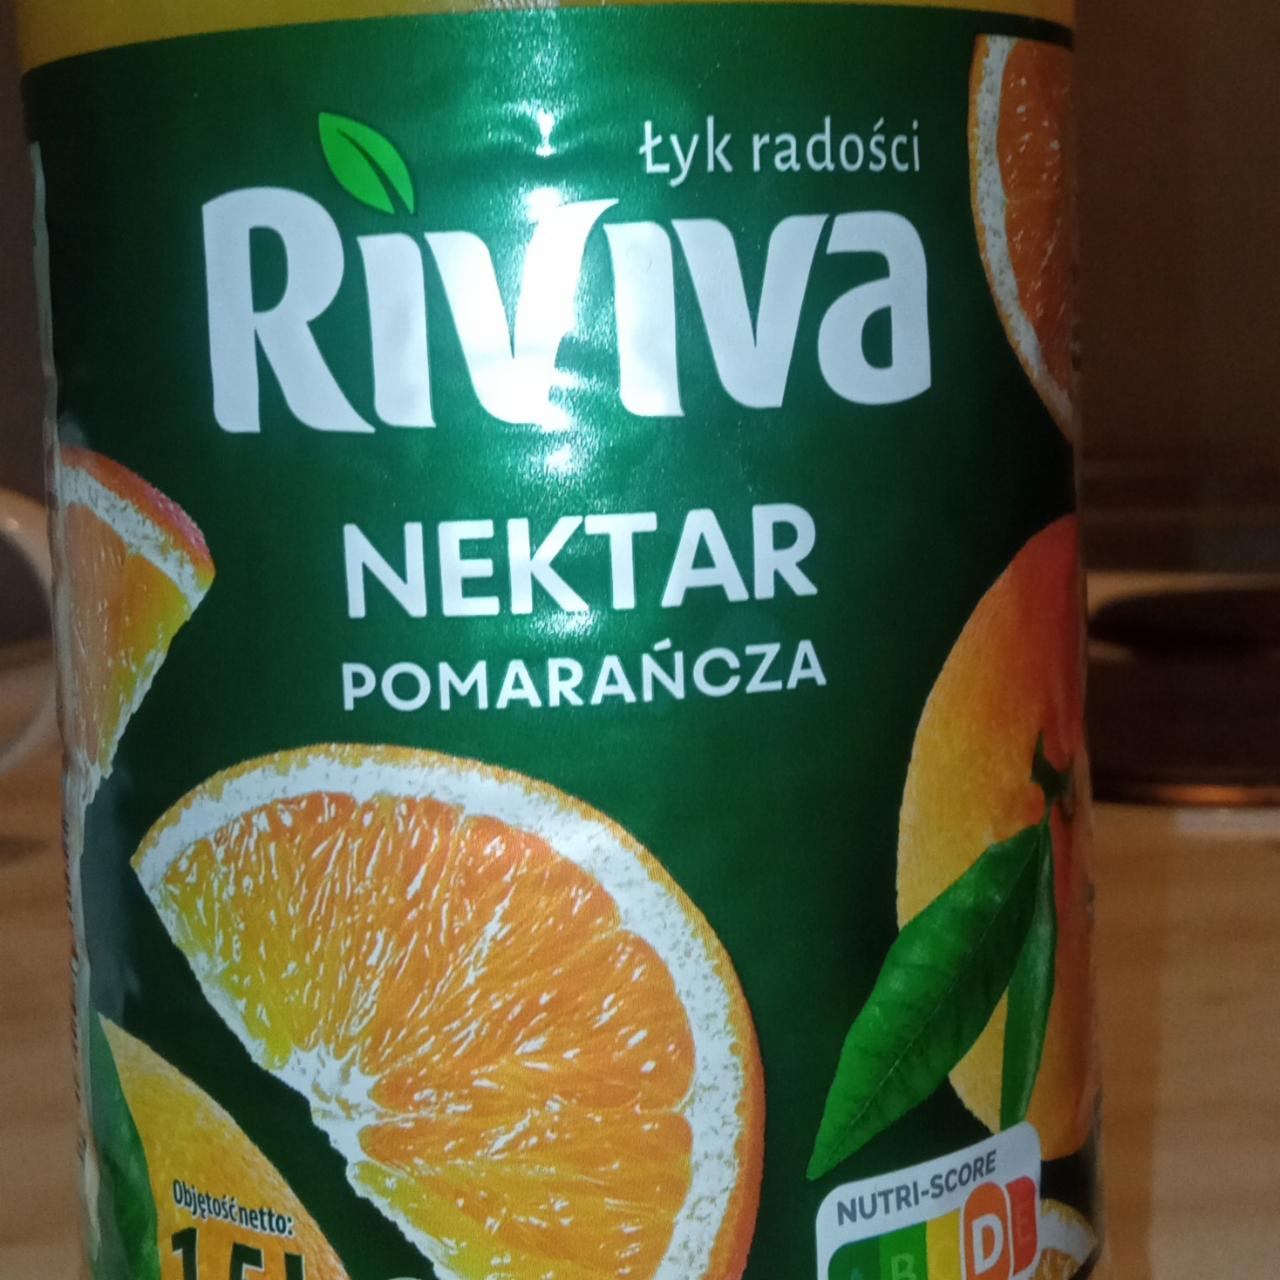 Фото - Nektar pomarańcza Riviva